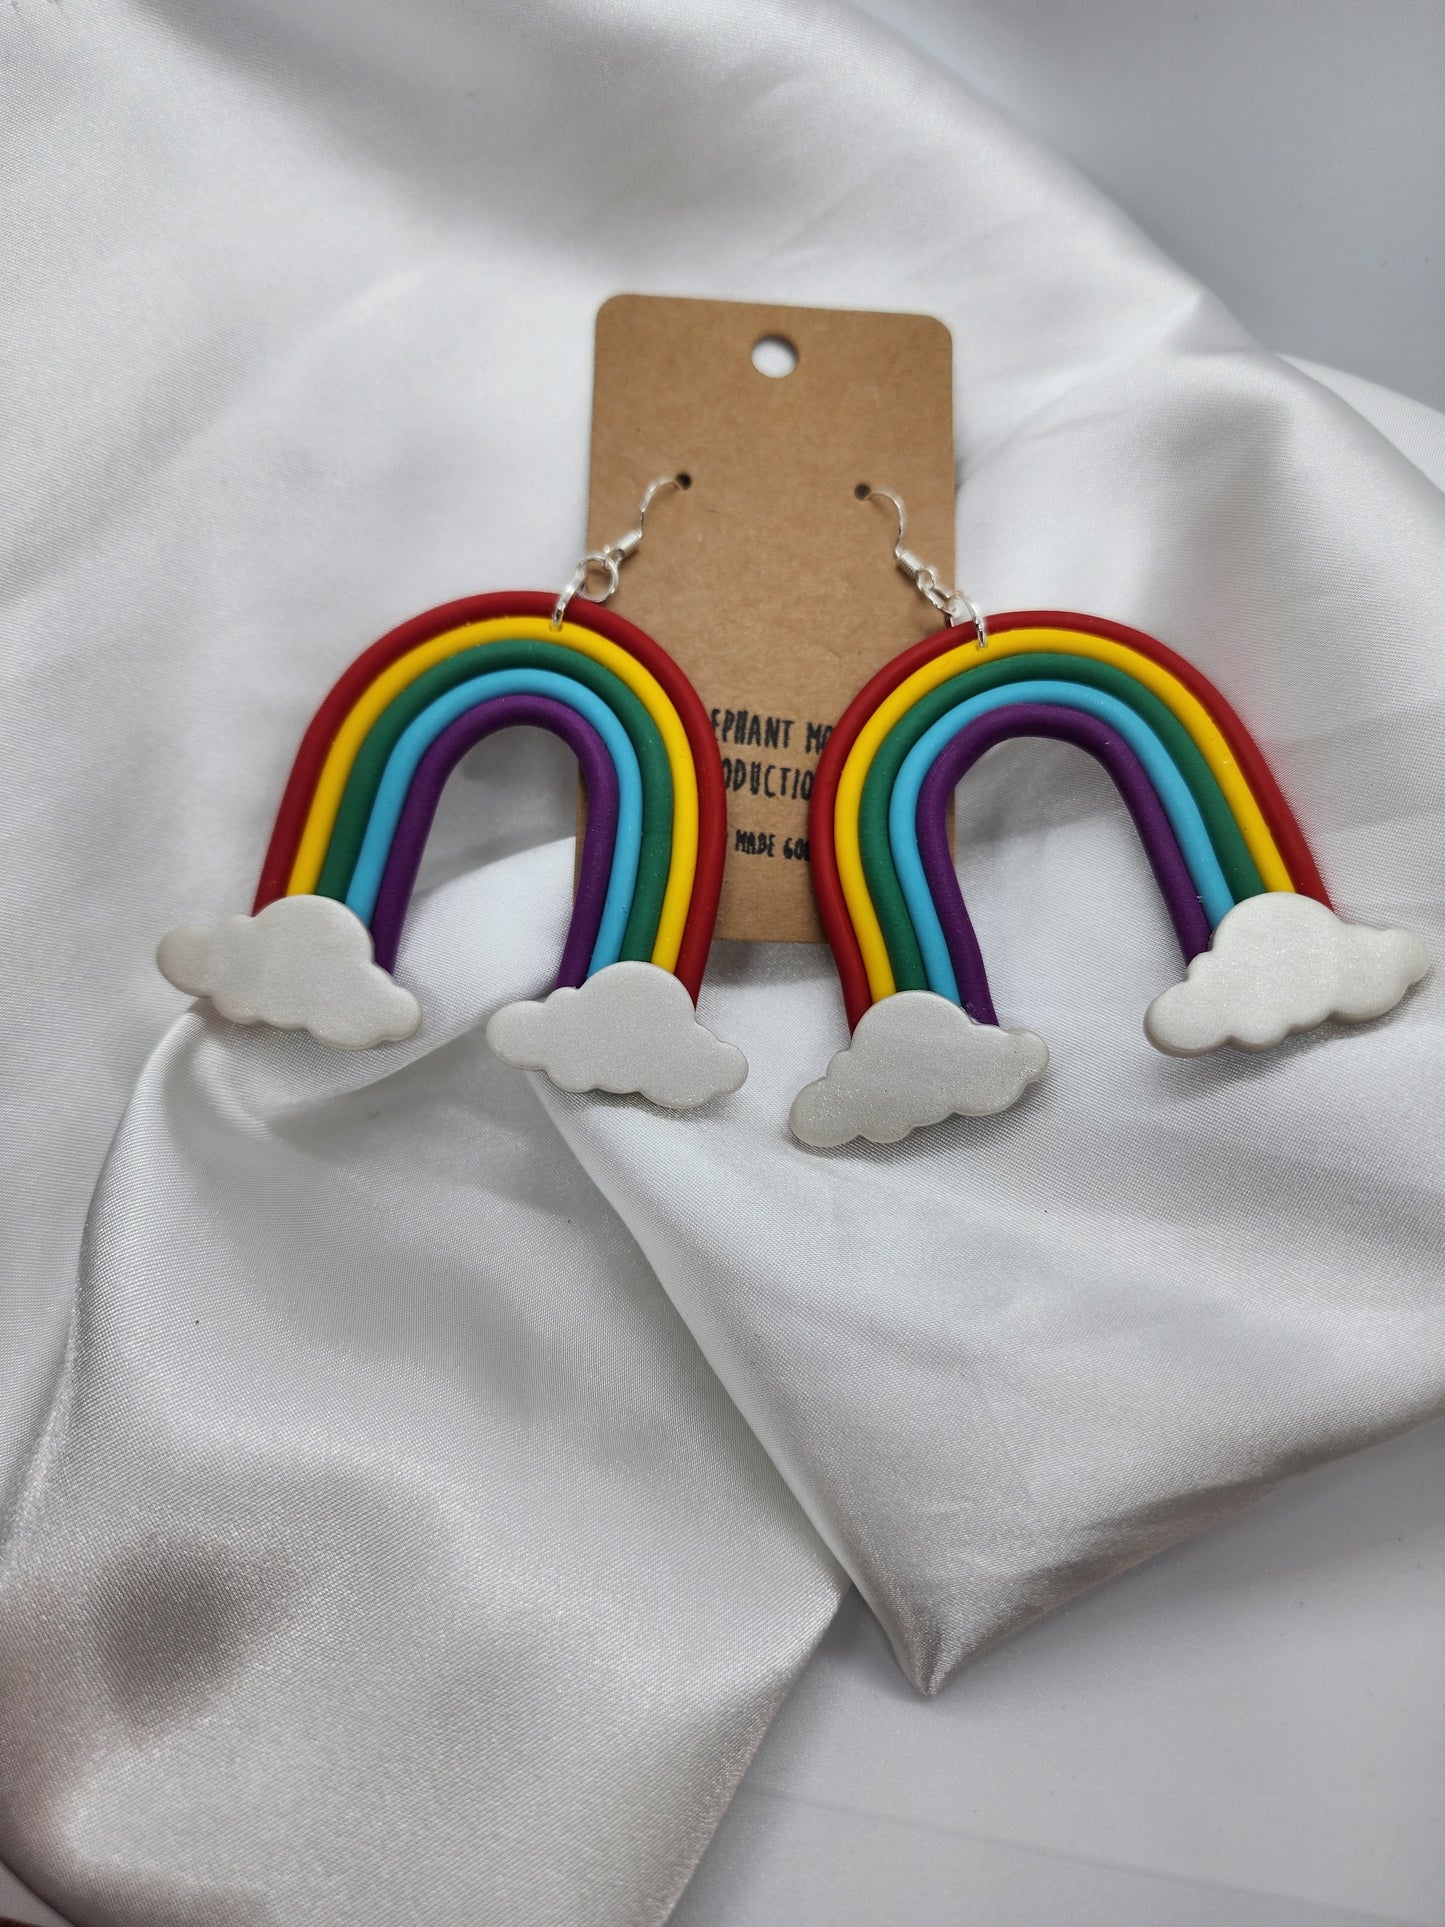 Giant Rainbow & Cloud Clay Earrings